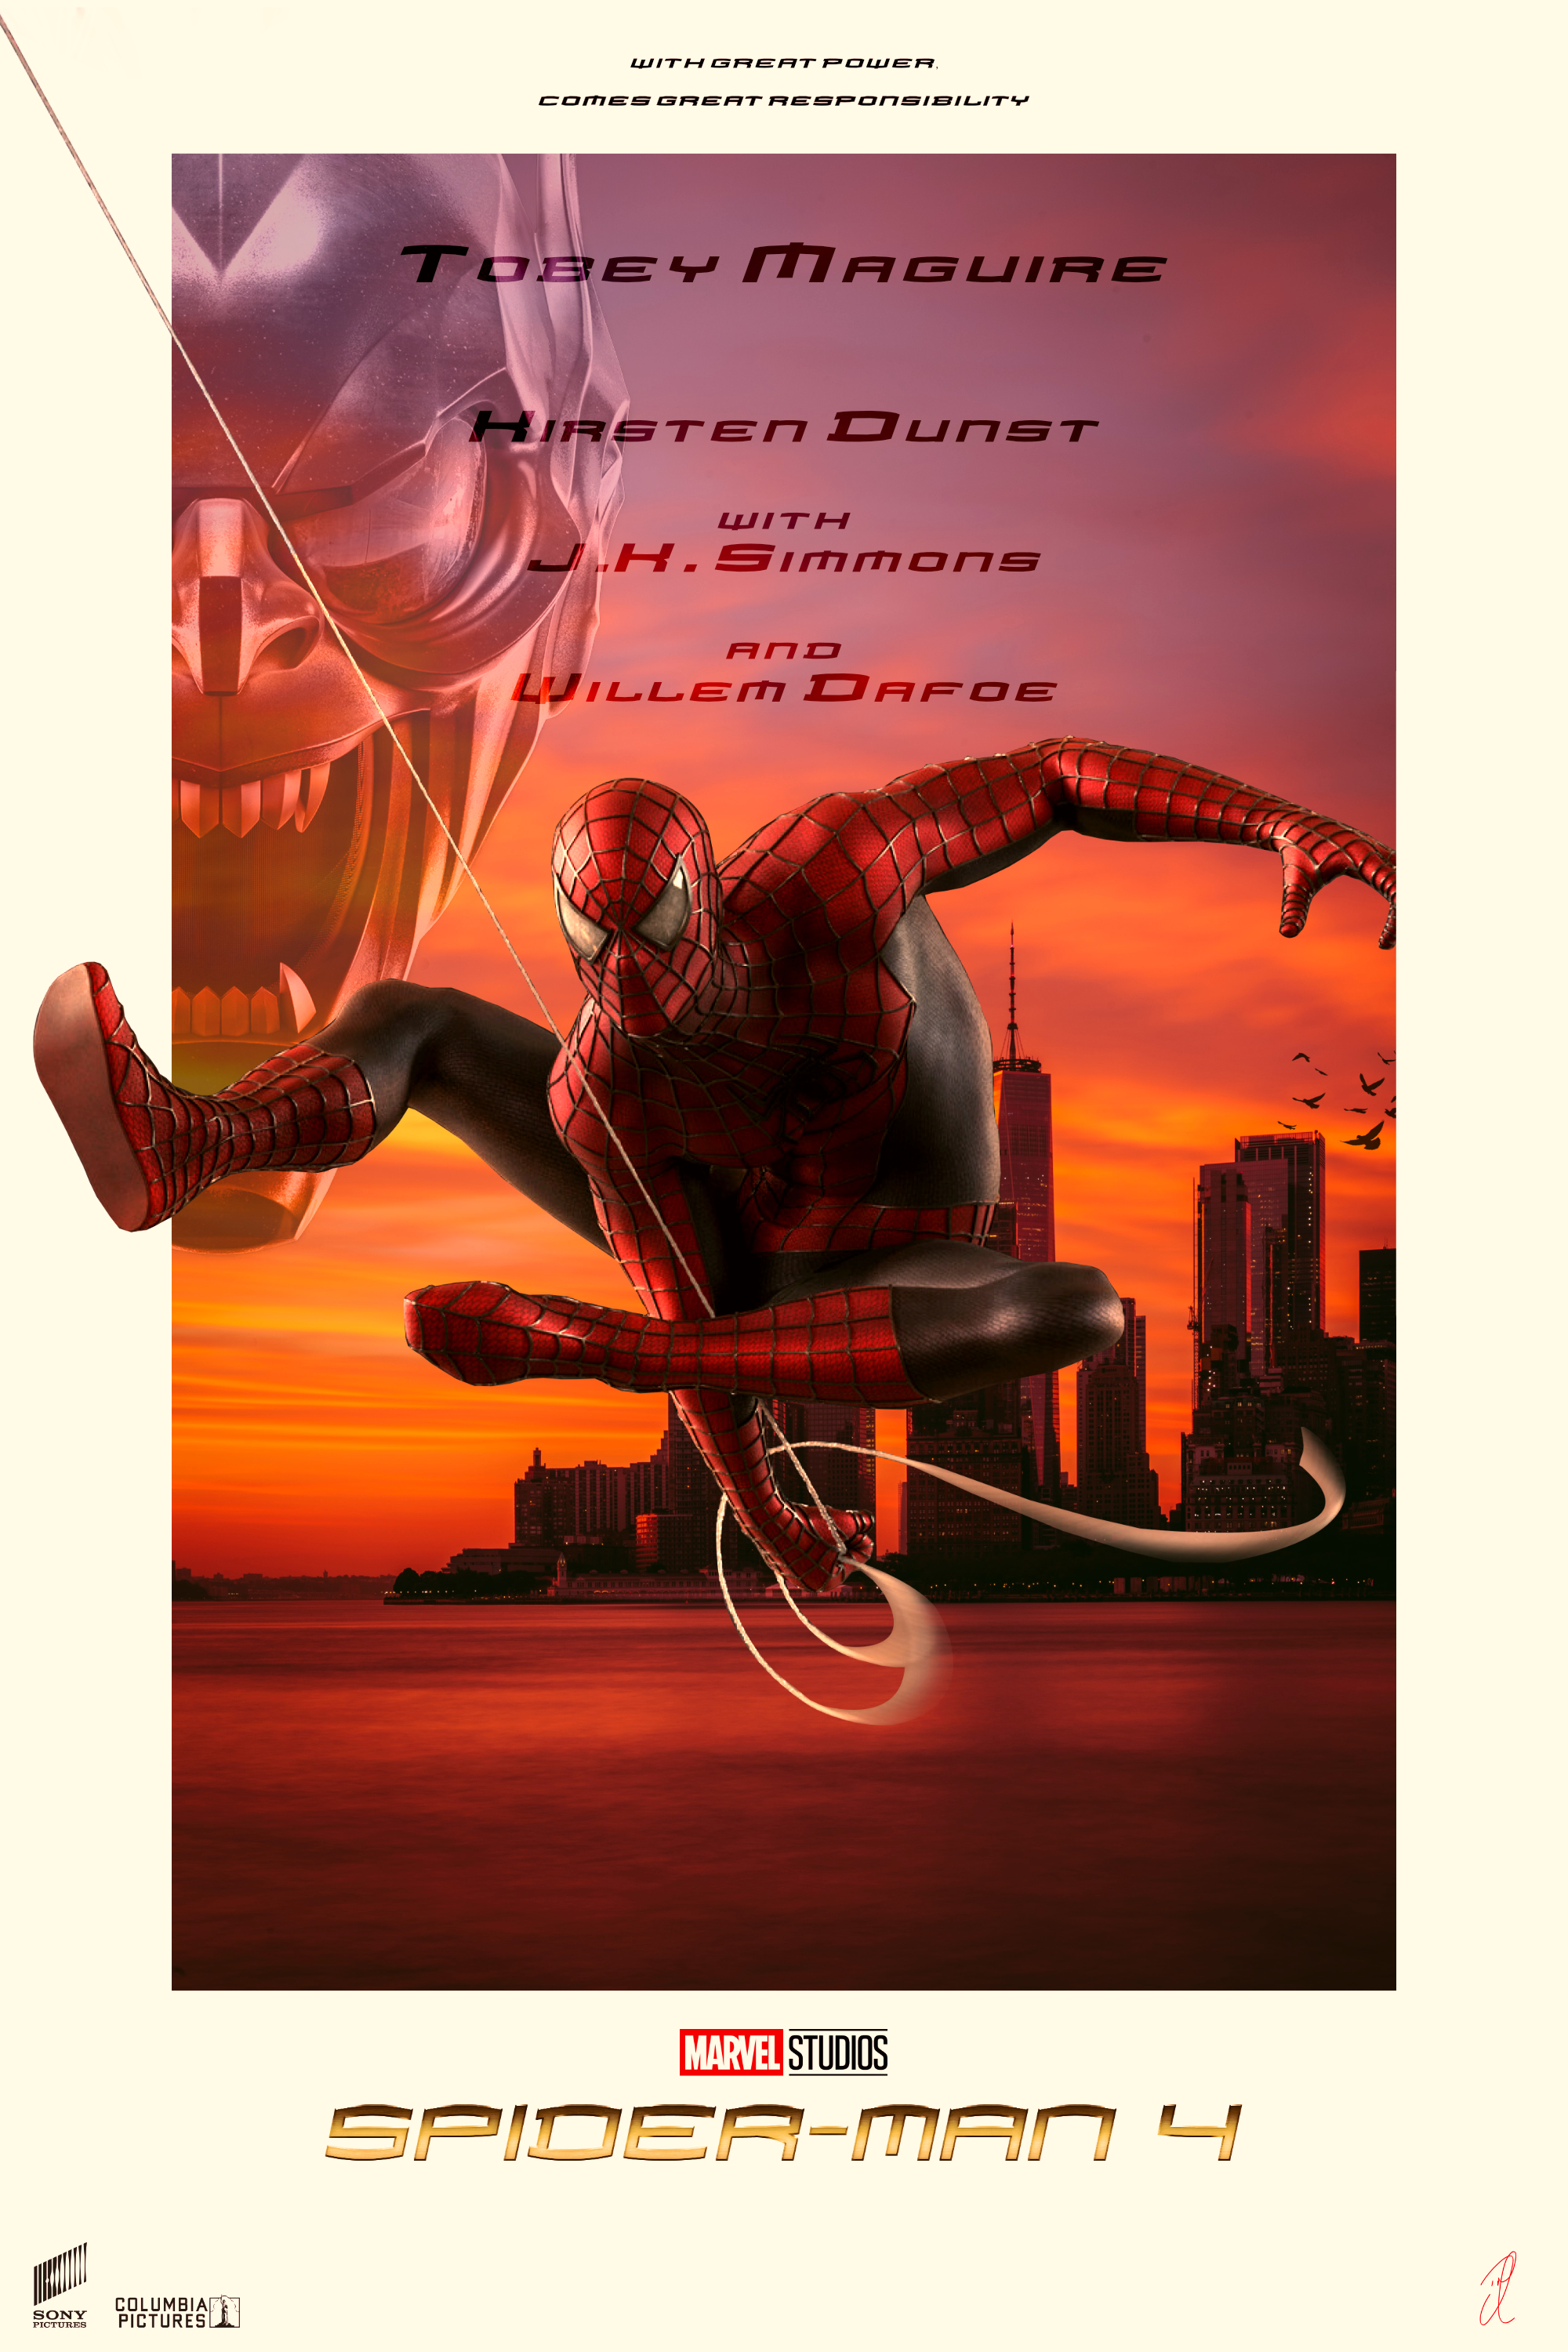 MARVEL'S SPIDER-MAN 2 FAN COVER ART by DOMREP1 on DeviantArt